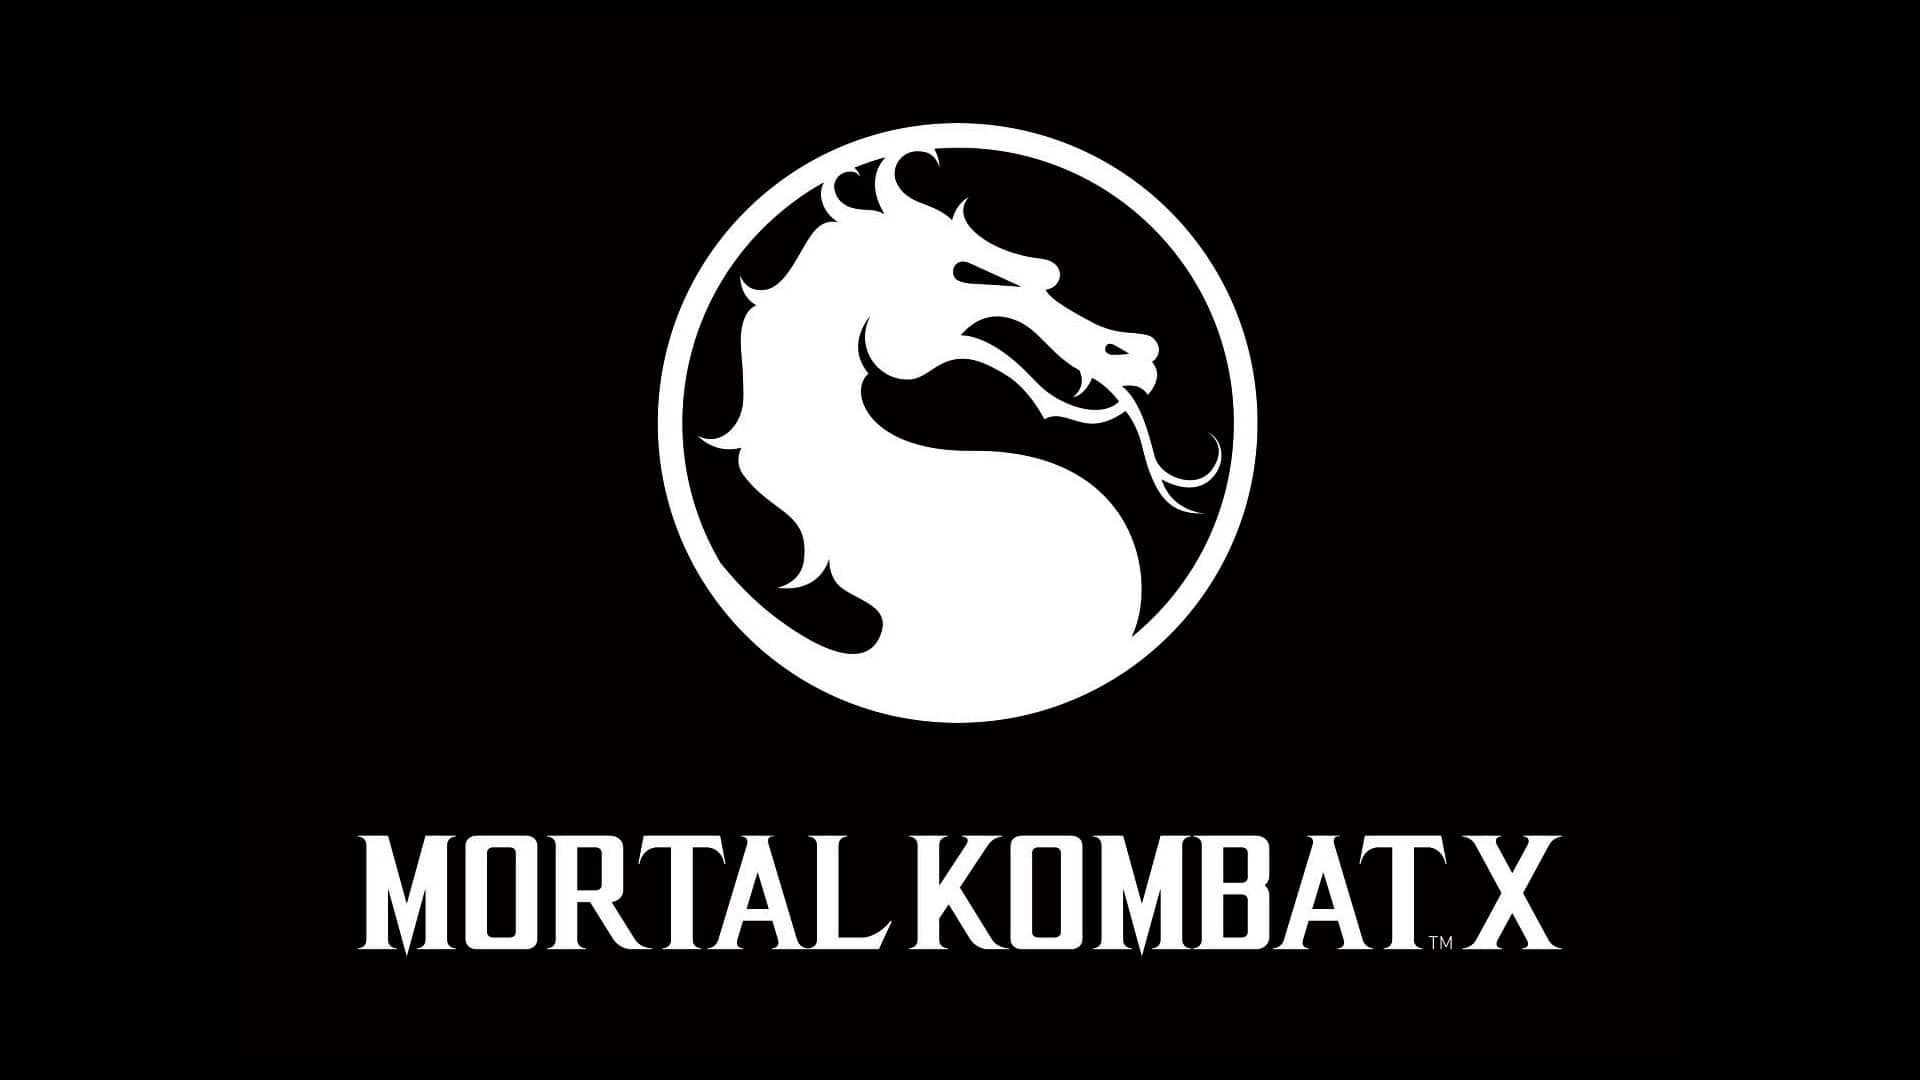 Mortal Kombat X Logo - KibrisPDR